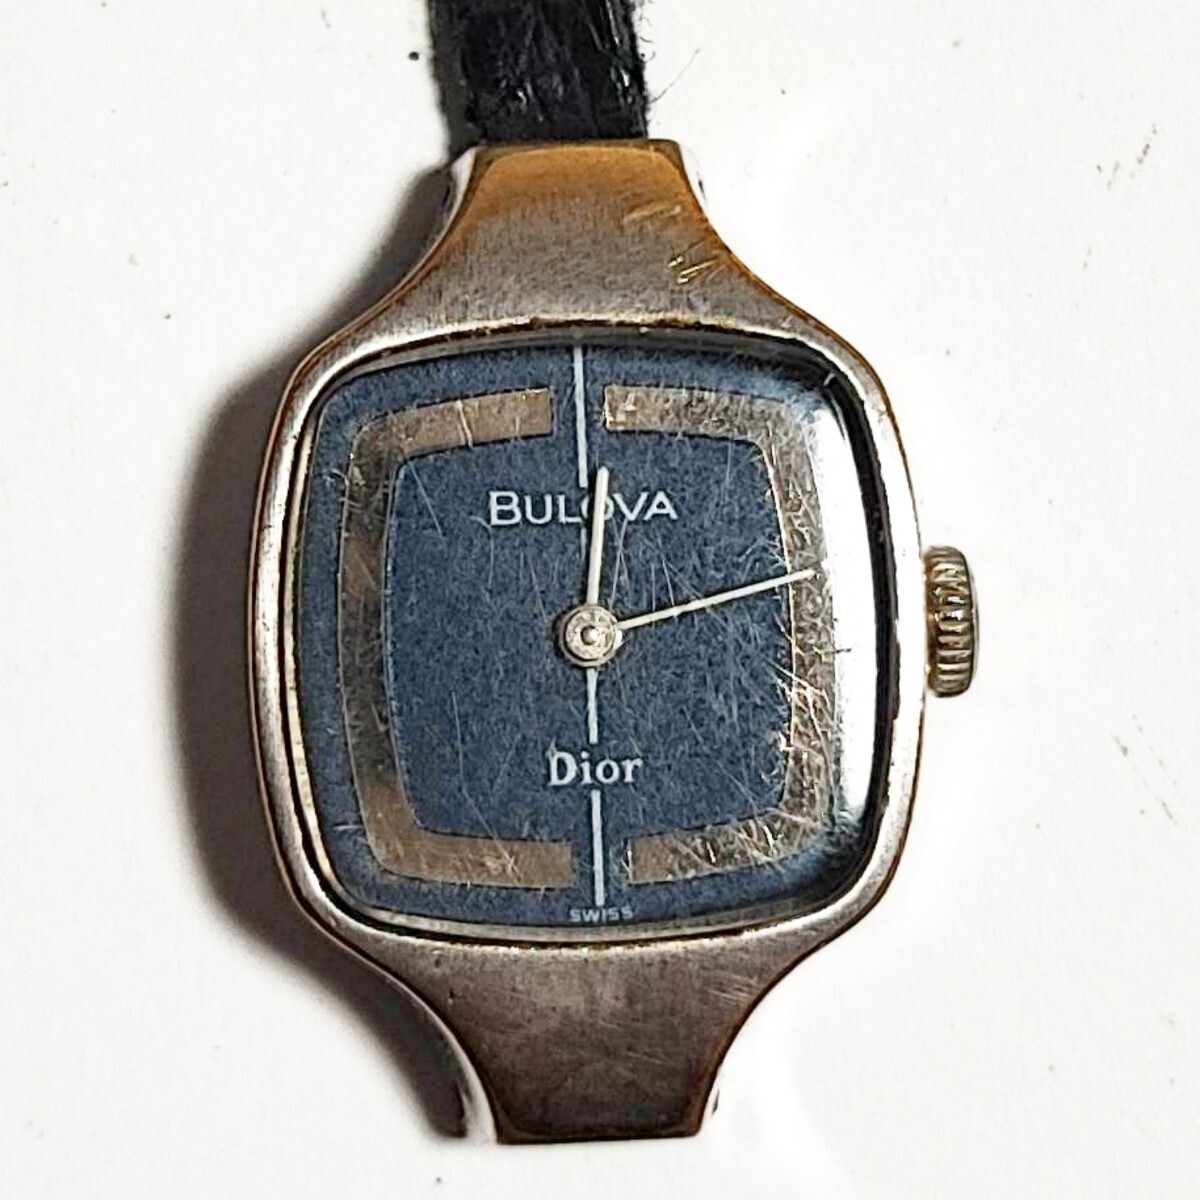  рабочий товар Dior BULOVA двойной имя Dior Broba женские наручные часы автоматический Vintage механический завод тип работа товар Q015